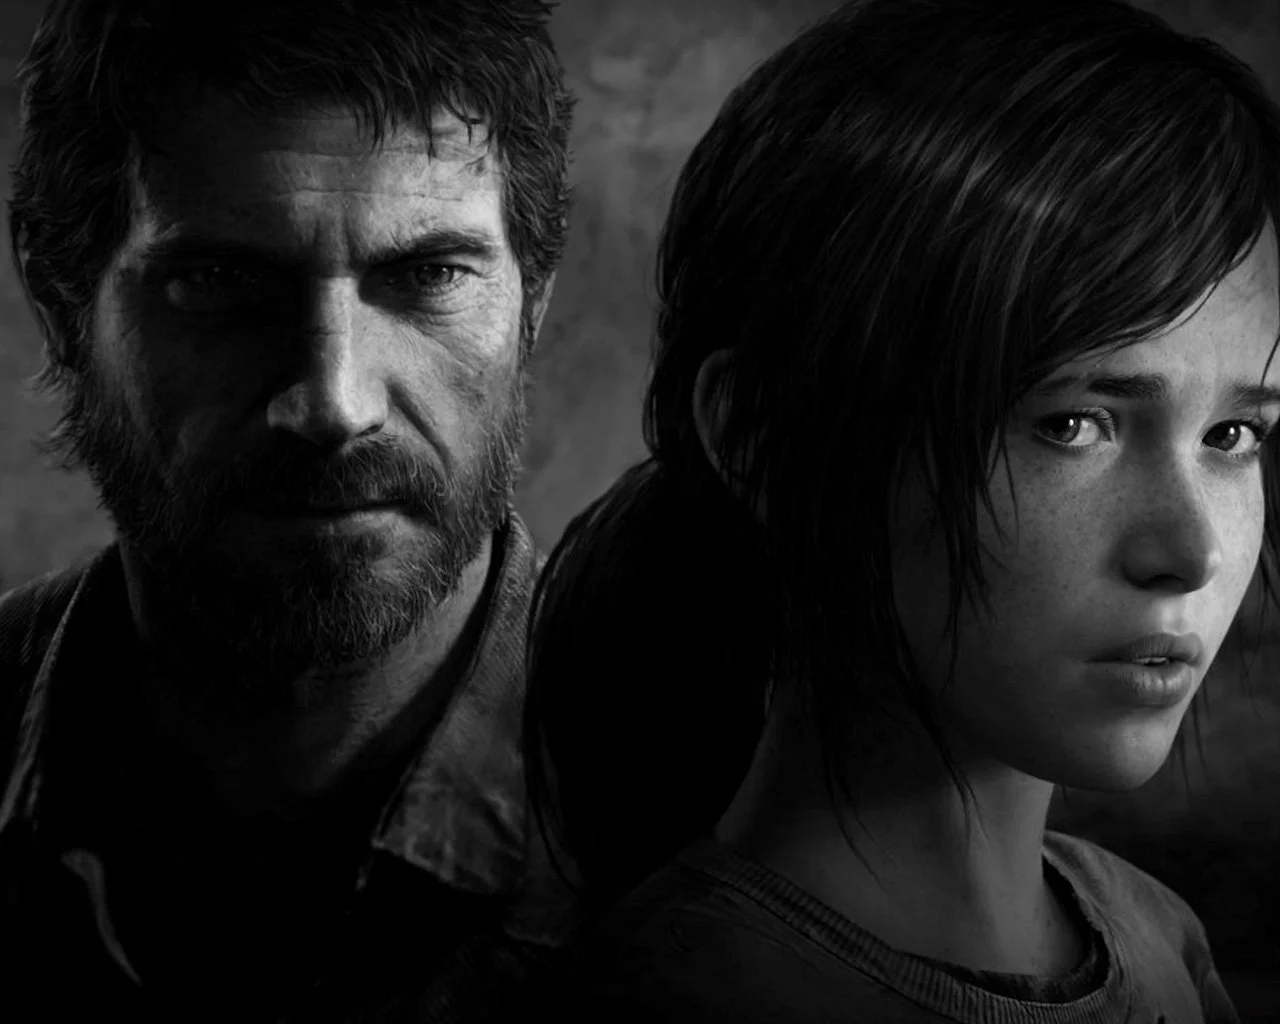 О новом DLC для The Last of Us расскажут уже на этой неделе - изображение обложка